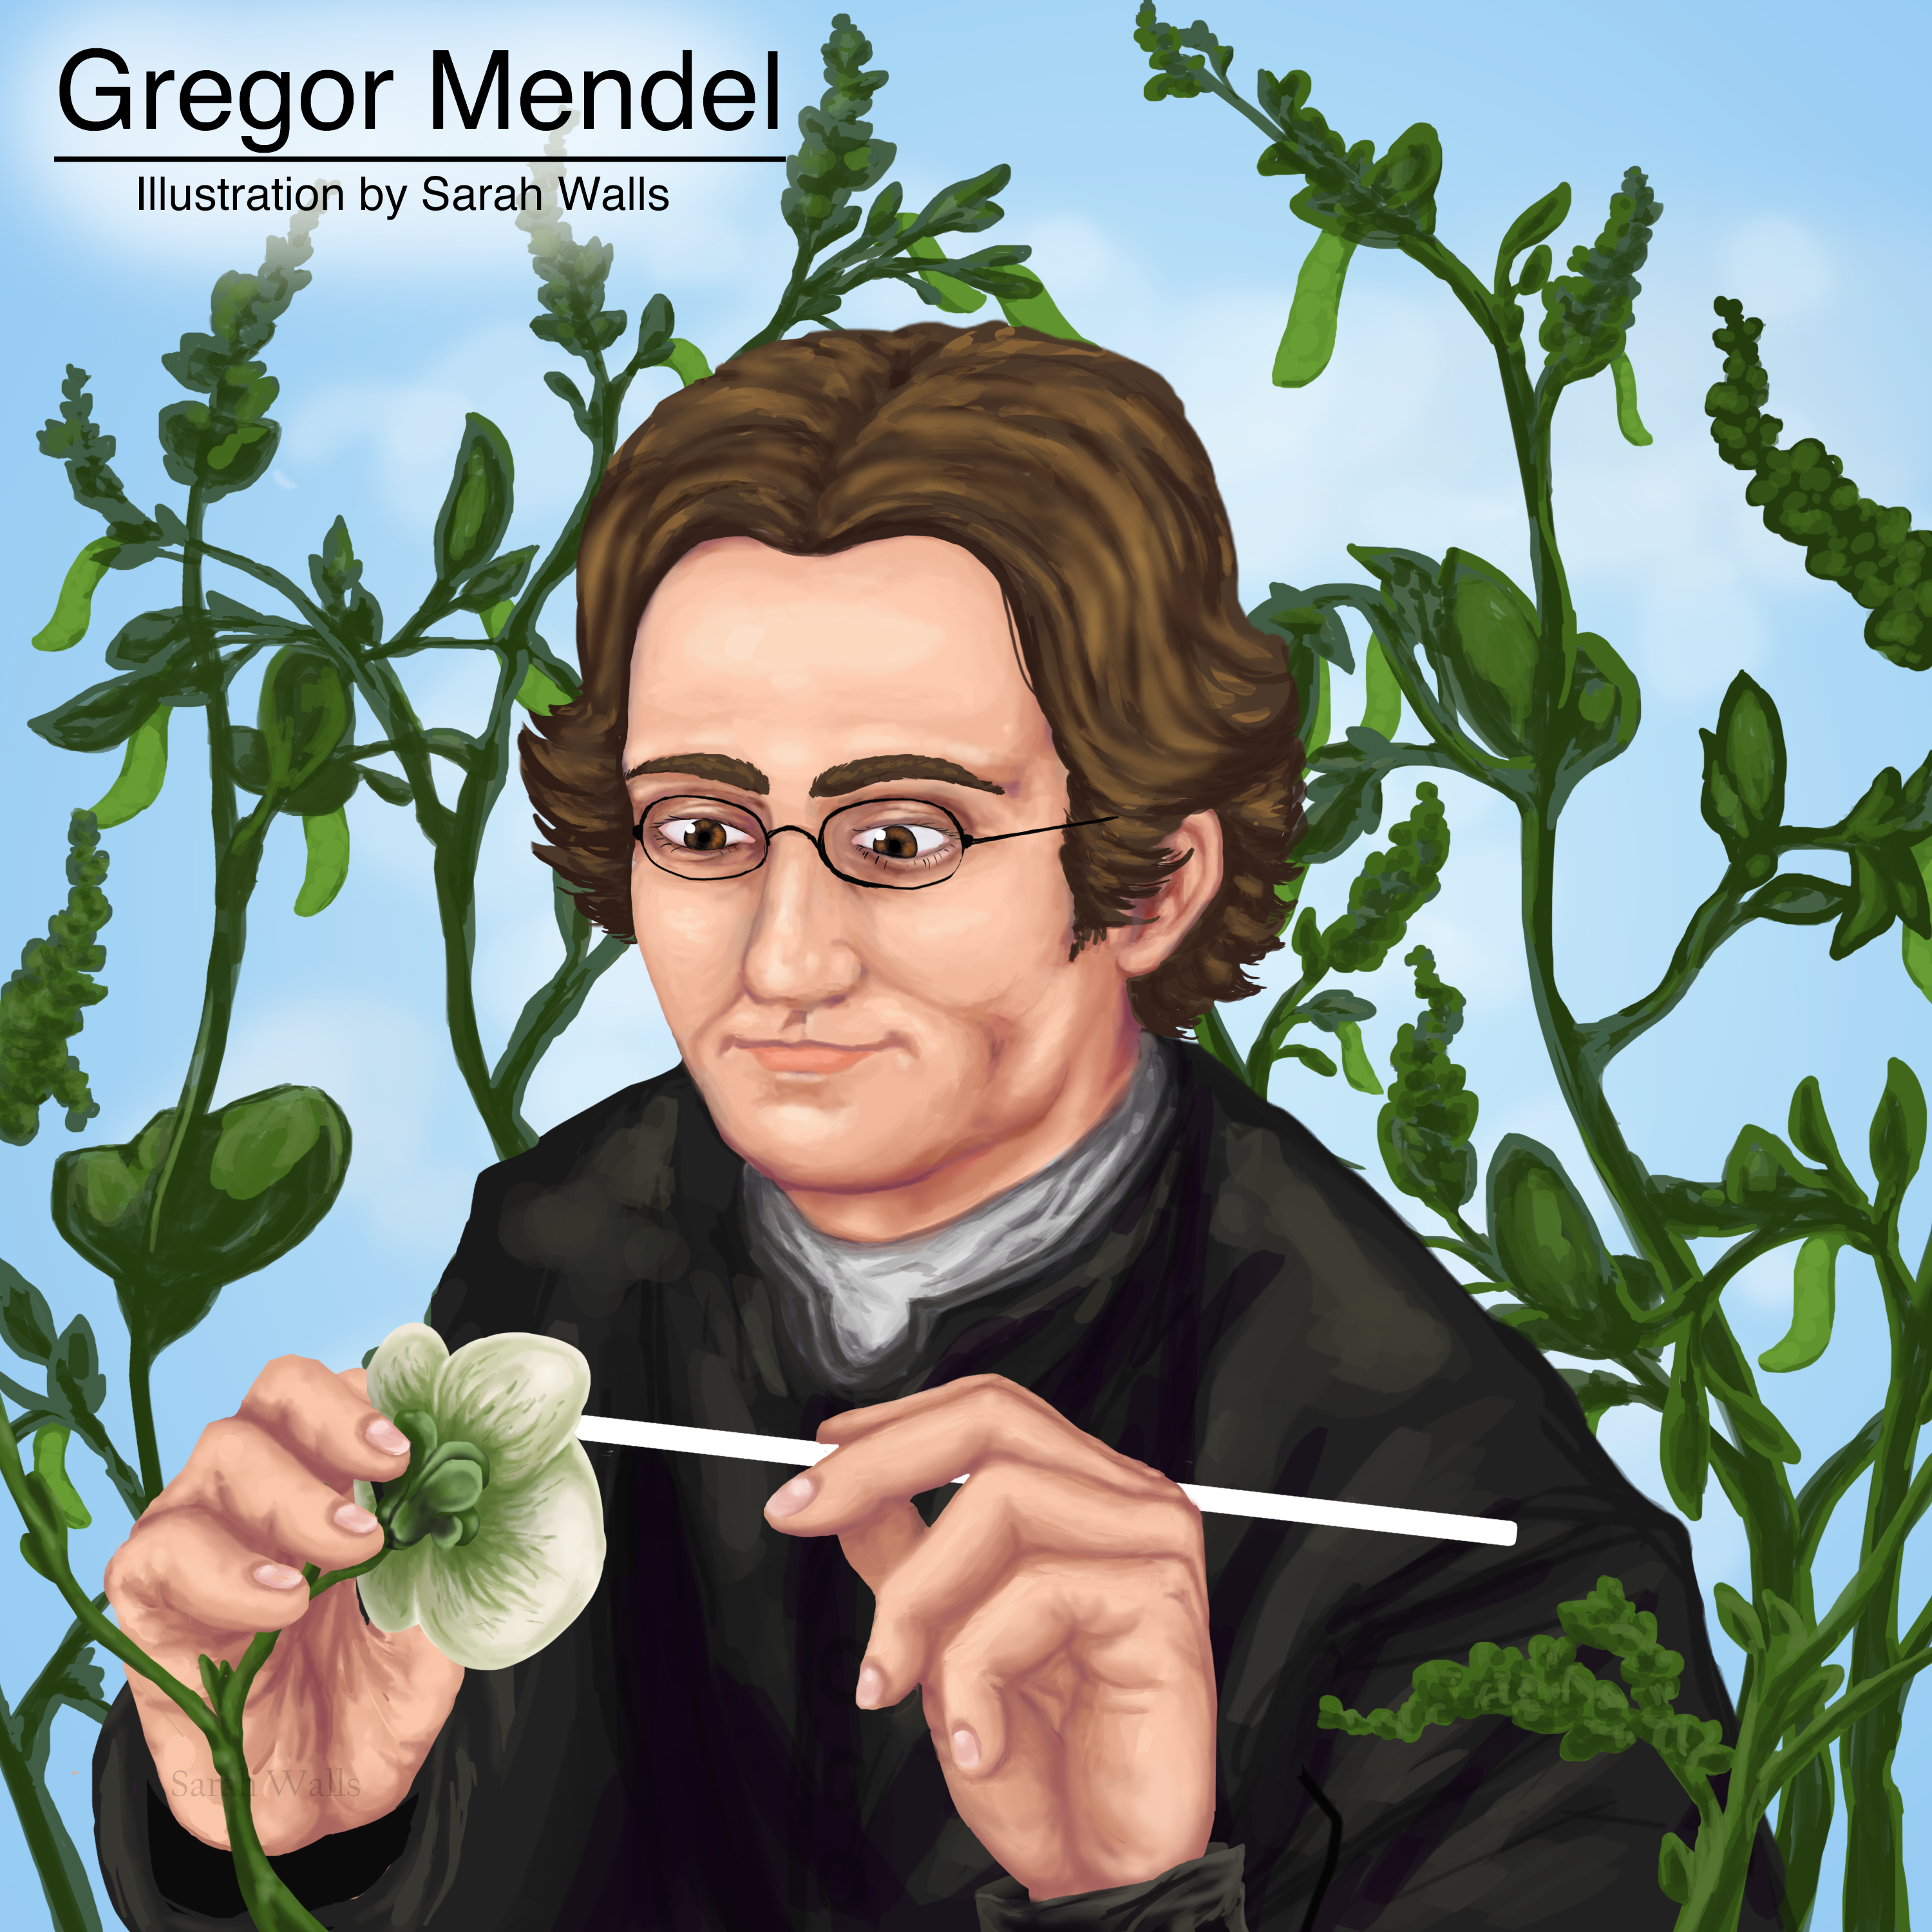 An illustration of Gregor Mendel